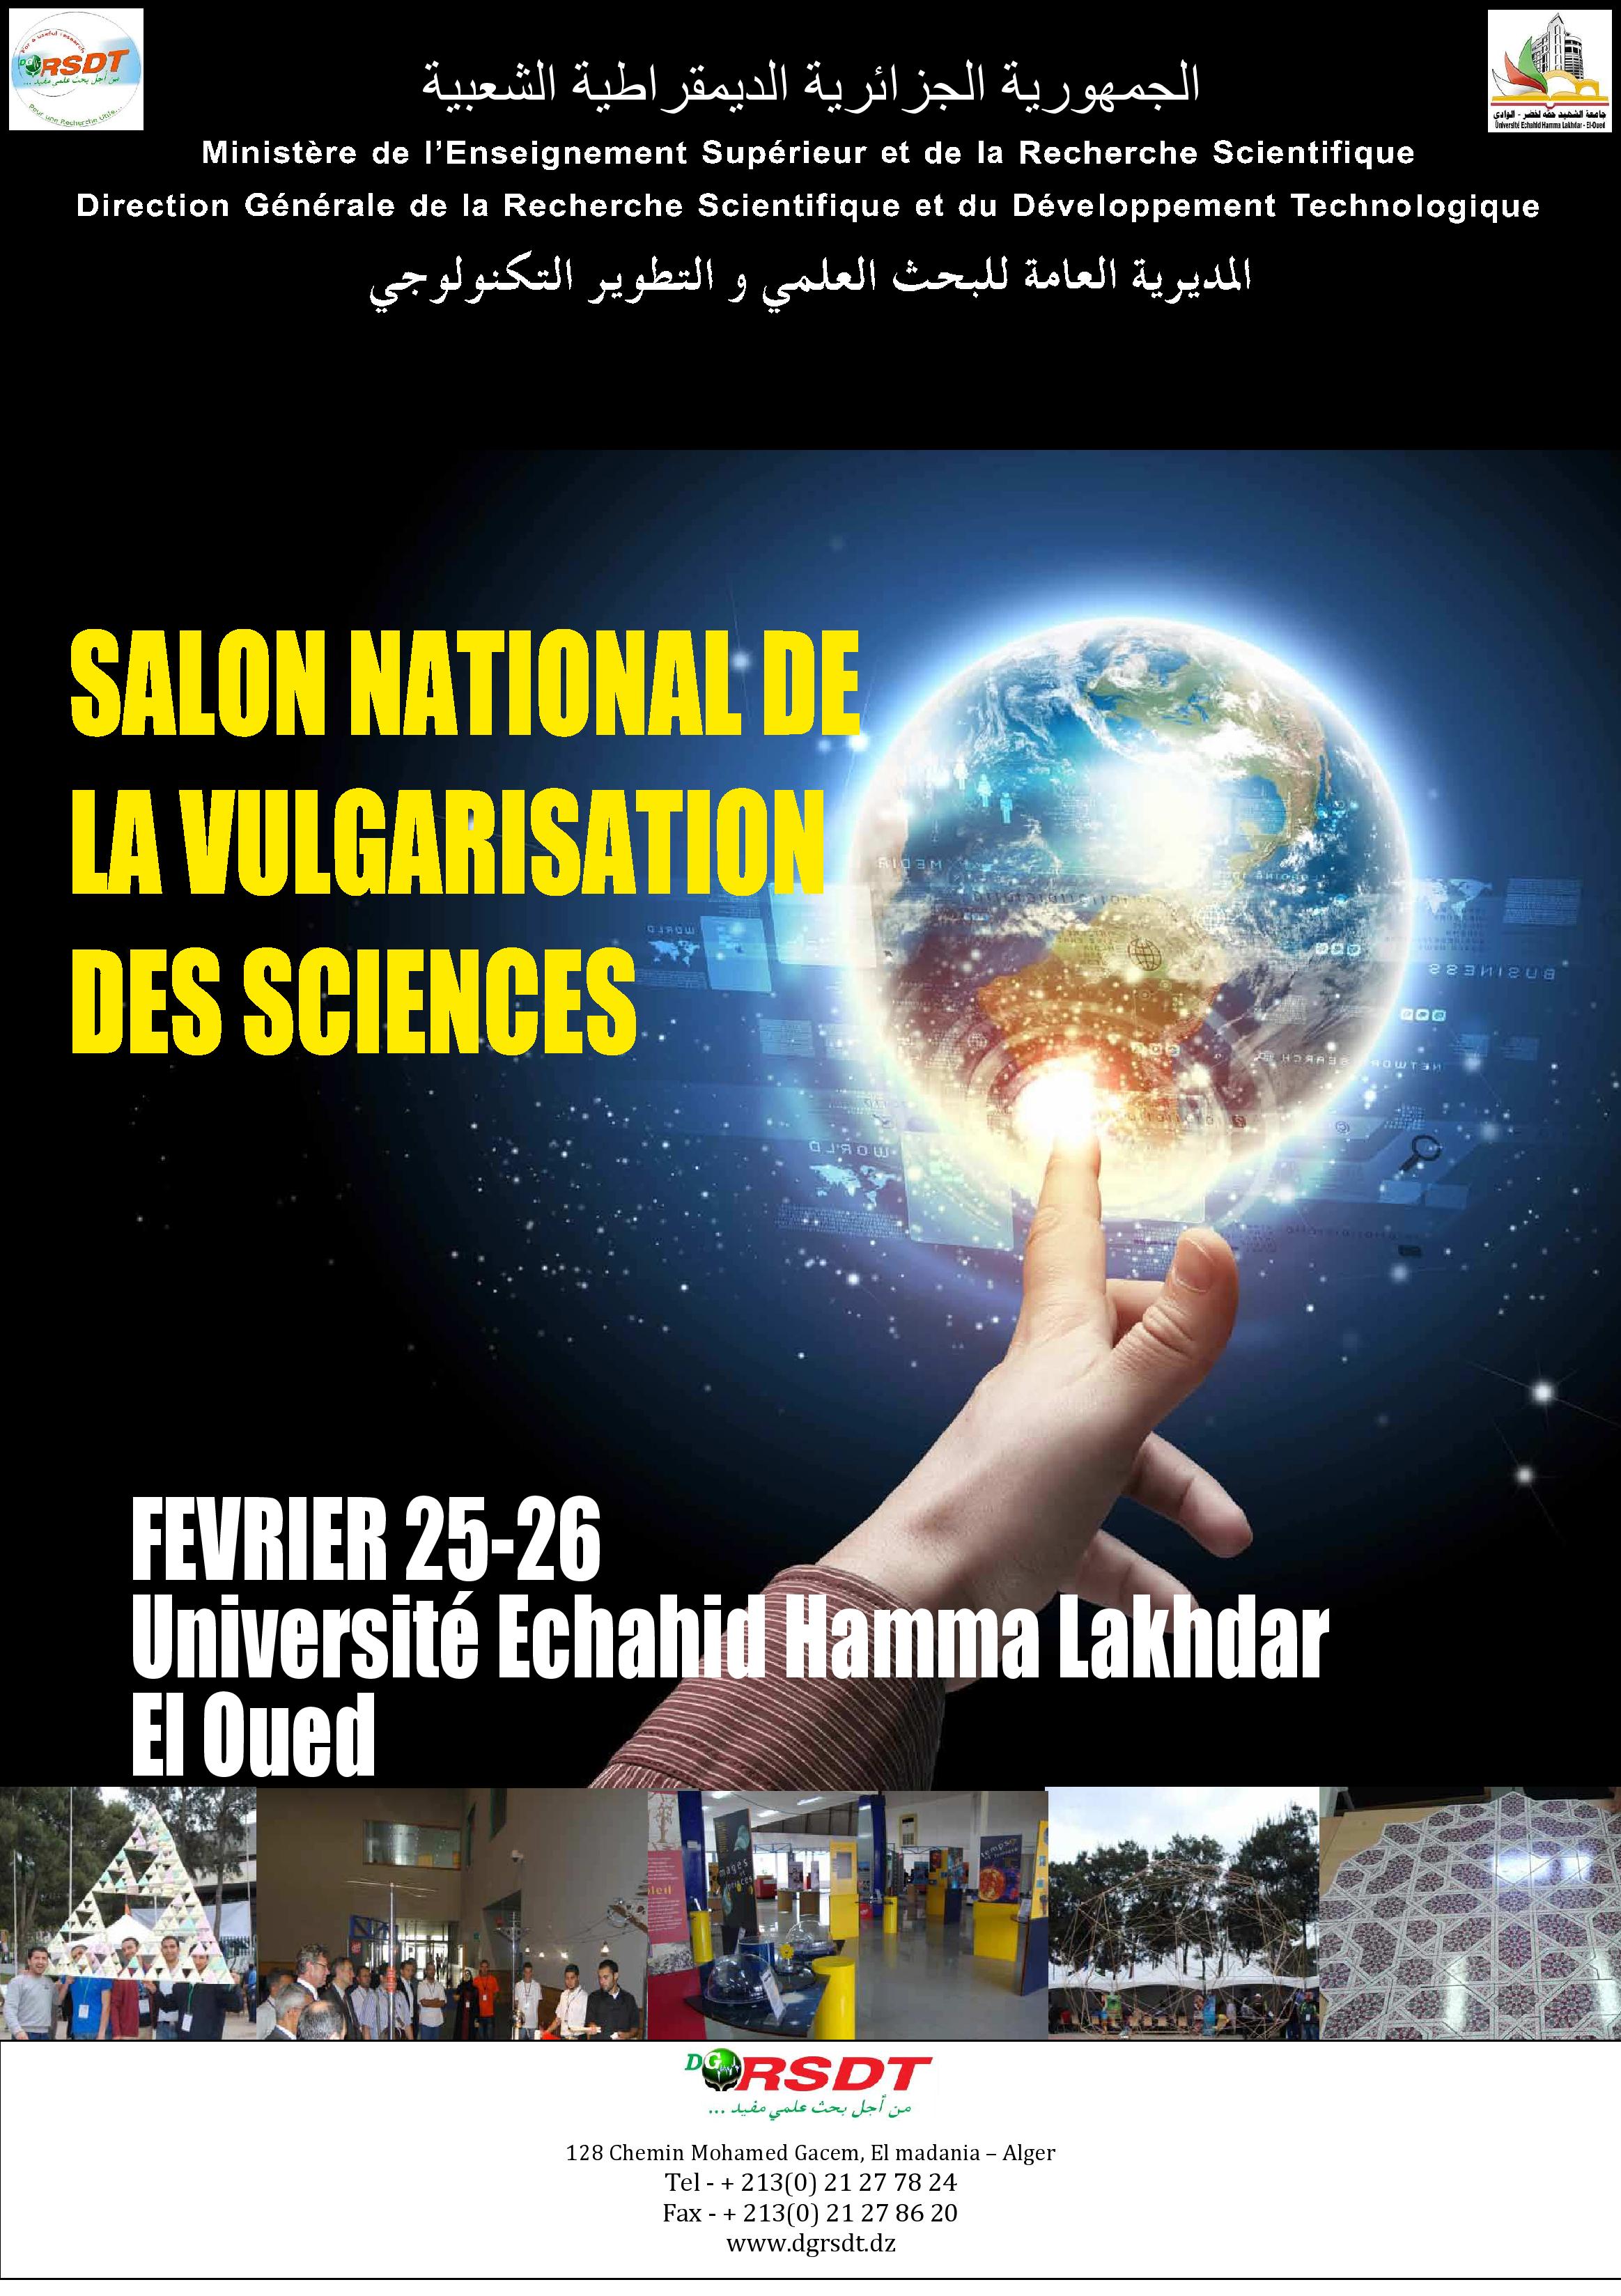 Affiche_Vulgarisation_des_Sciences_El_Oued-page-001.jpg - 706.46 kB